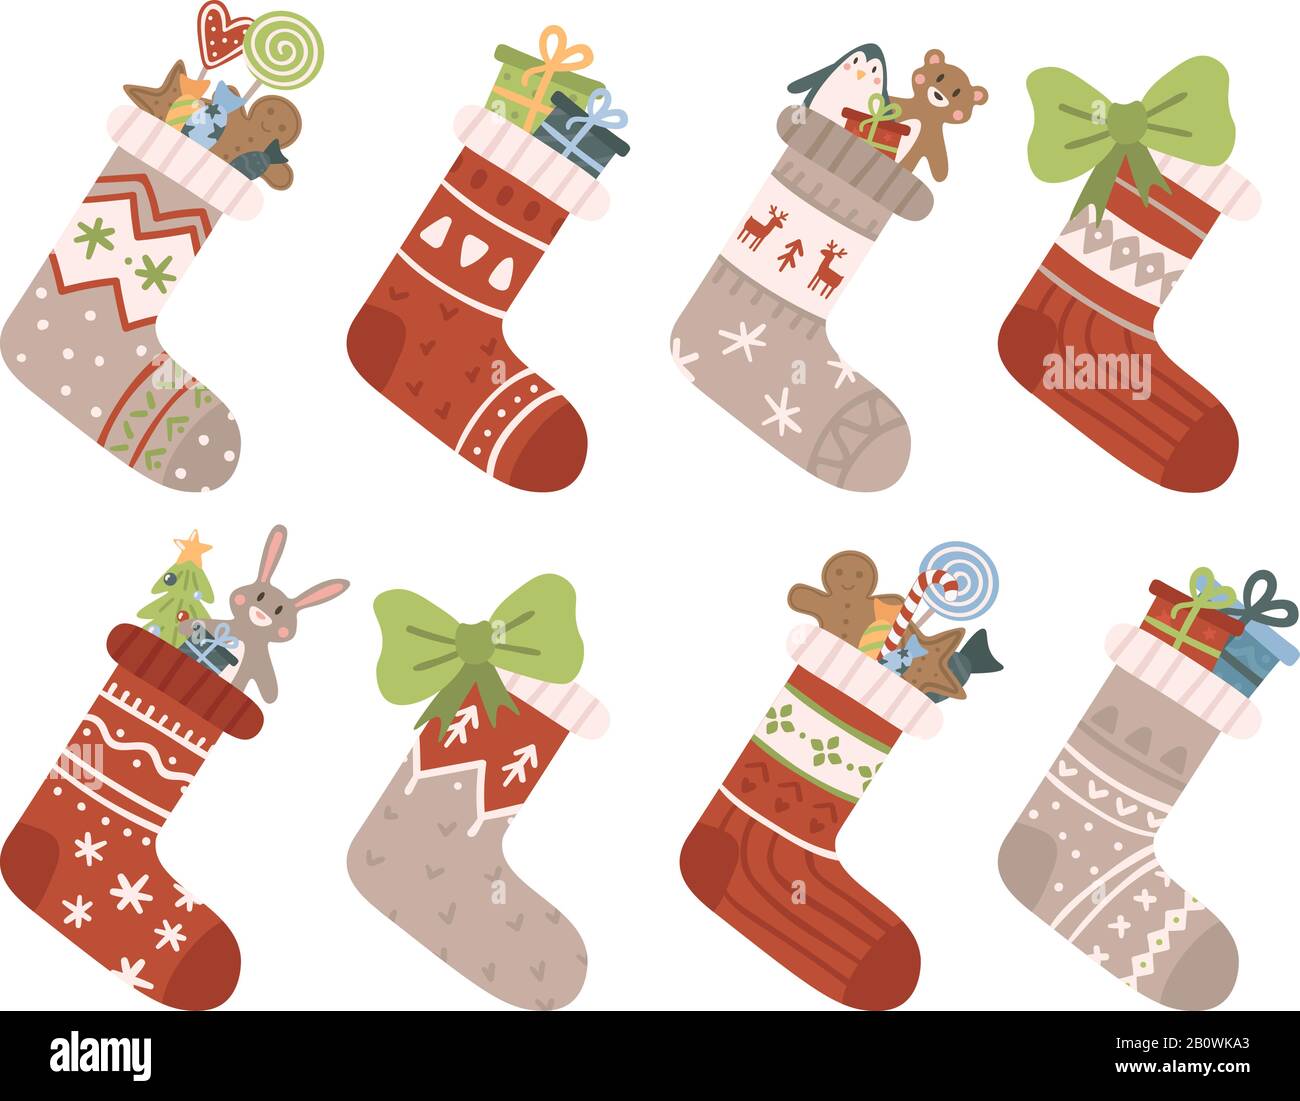 Chaussettes de Noël. Chaussette ou chaussette de Noël avec flocons de neige, bonhomme de neige et Père Noël. Les aides de Deer et Santas s'elent sur le jeu de vecteurs de bas Illustration de Vecteur